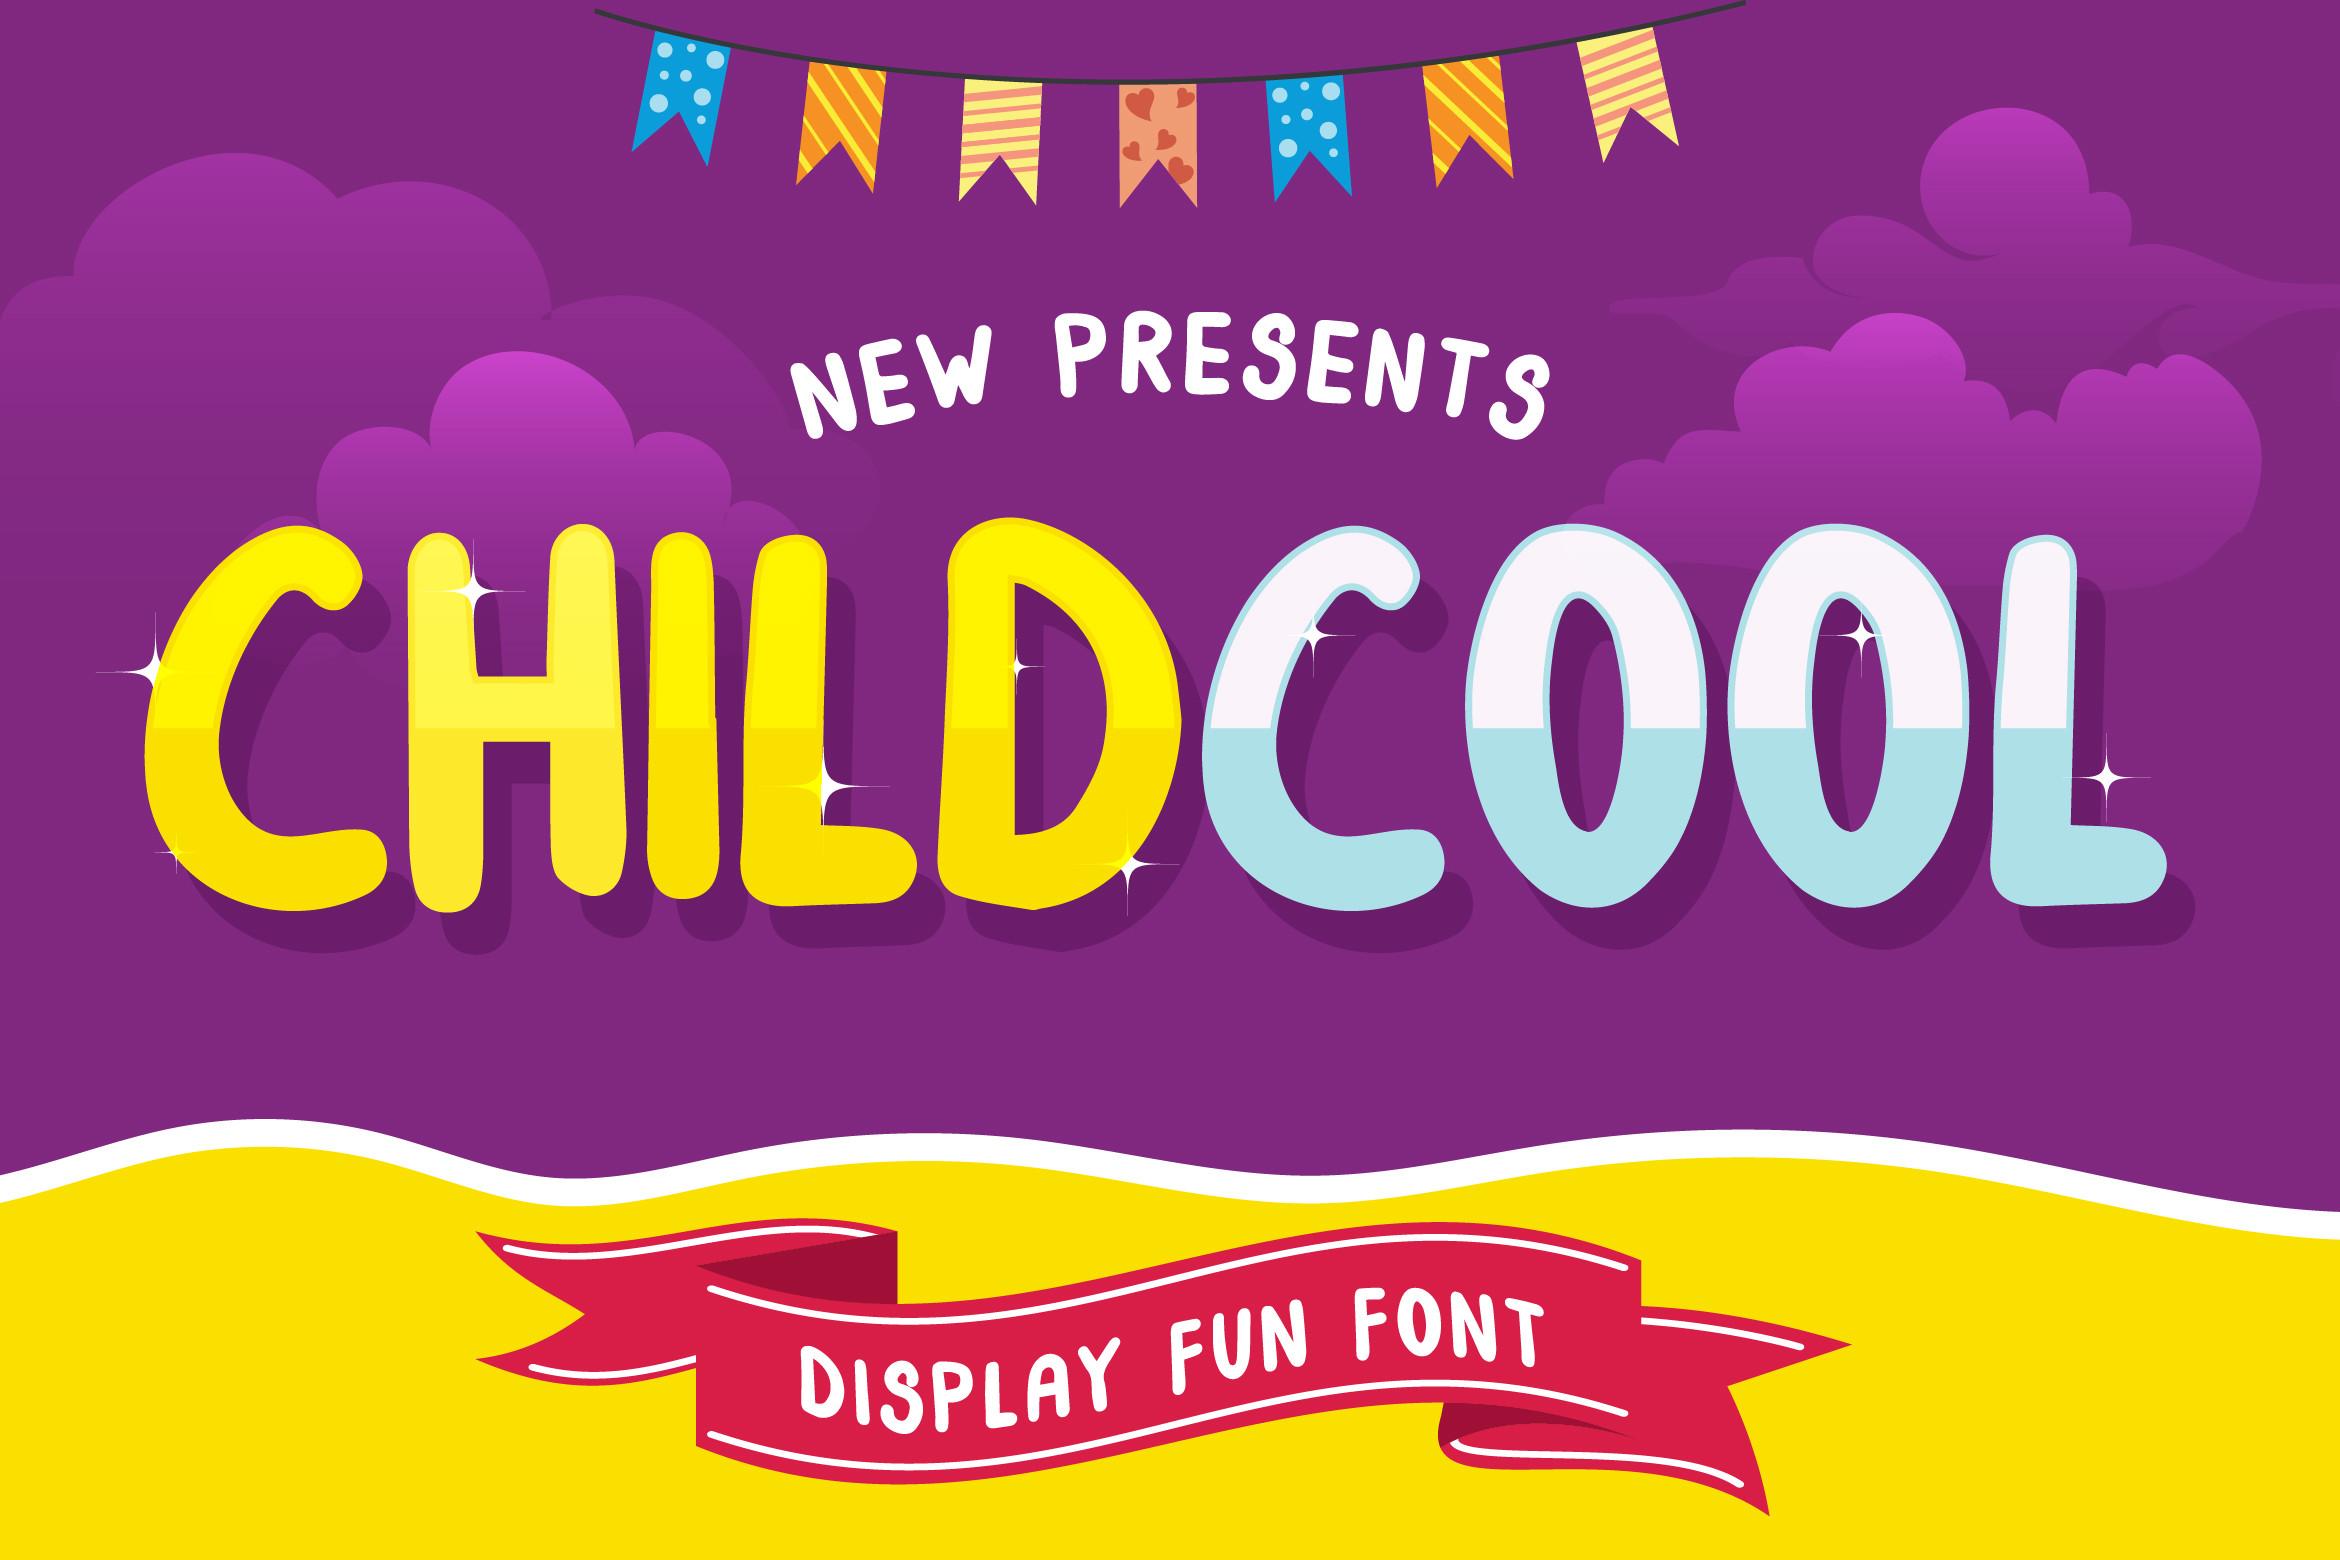 ChildCool Font